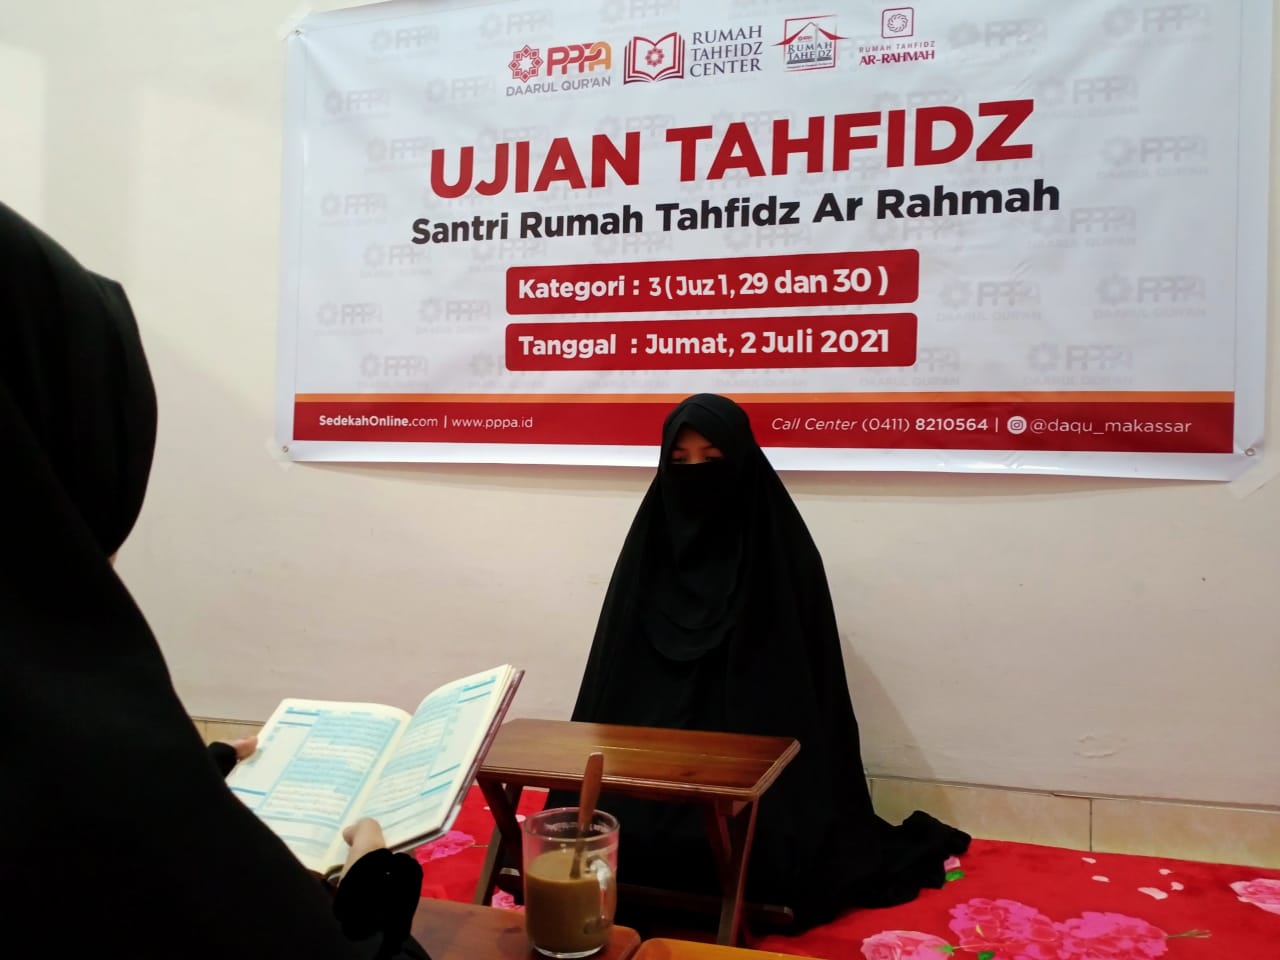 Semangat Santri Rumah Tahfidz Ar-Rahmah Makassar Hadapi Ujian